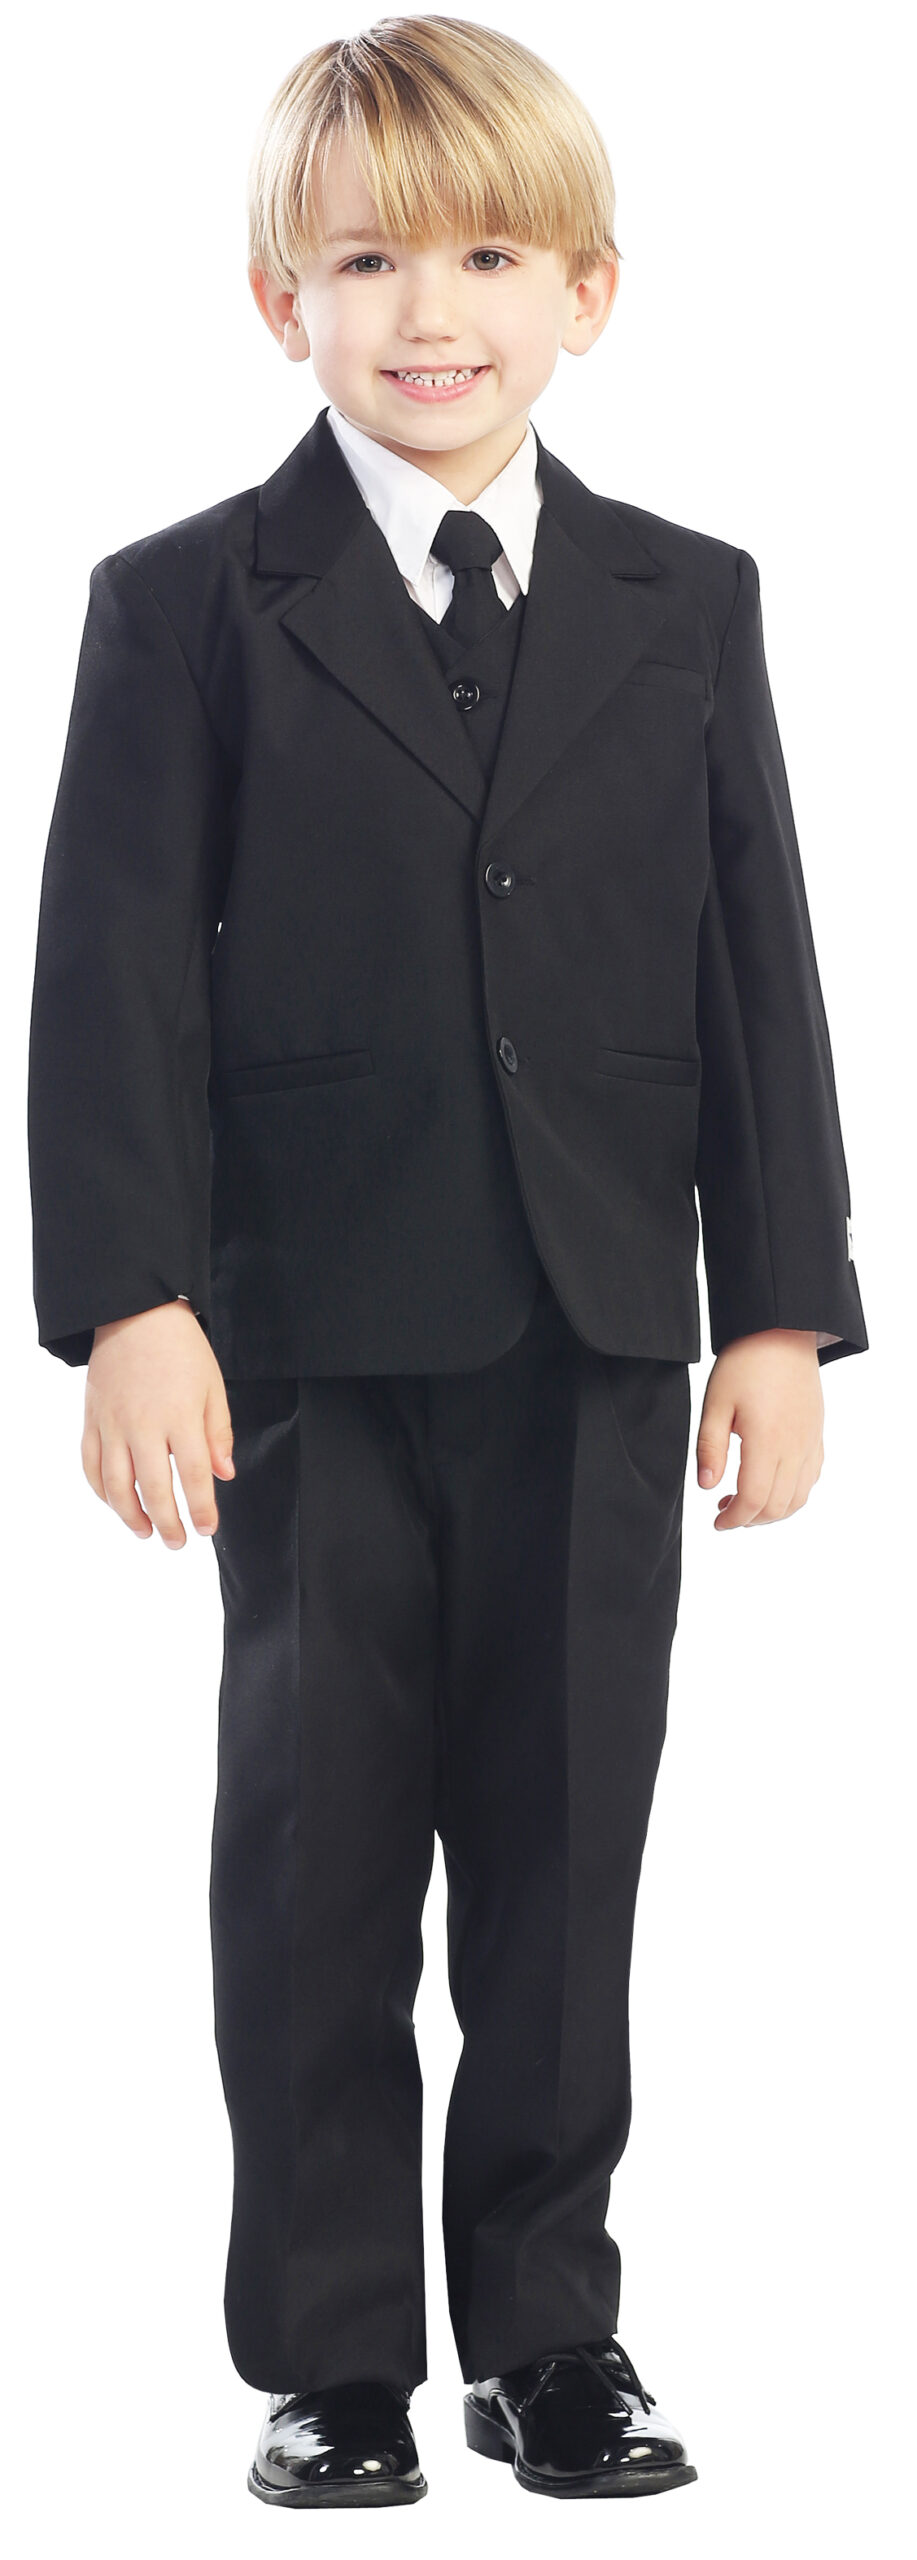 Avery Hill 5-Piece Boy's 2-Button Dress Suit Full-Back Vest - Black Size 3